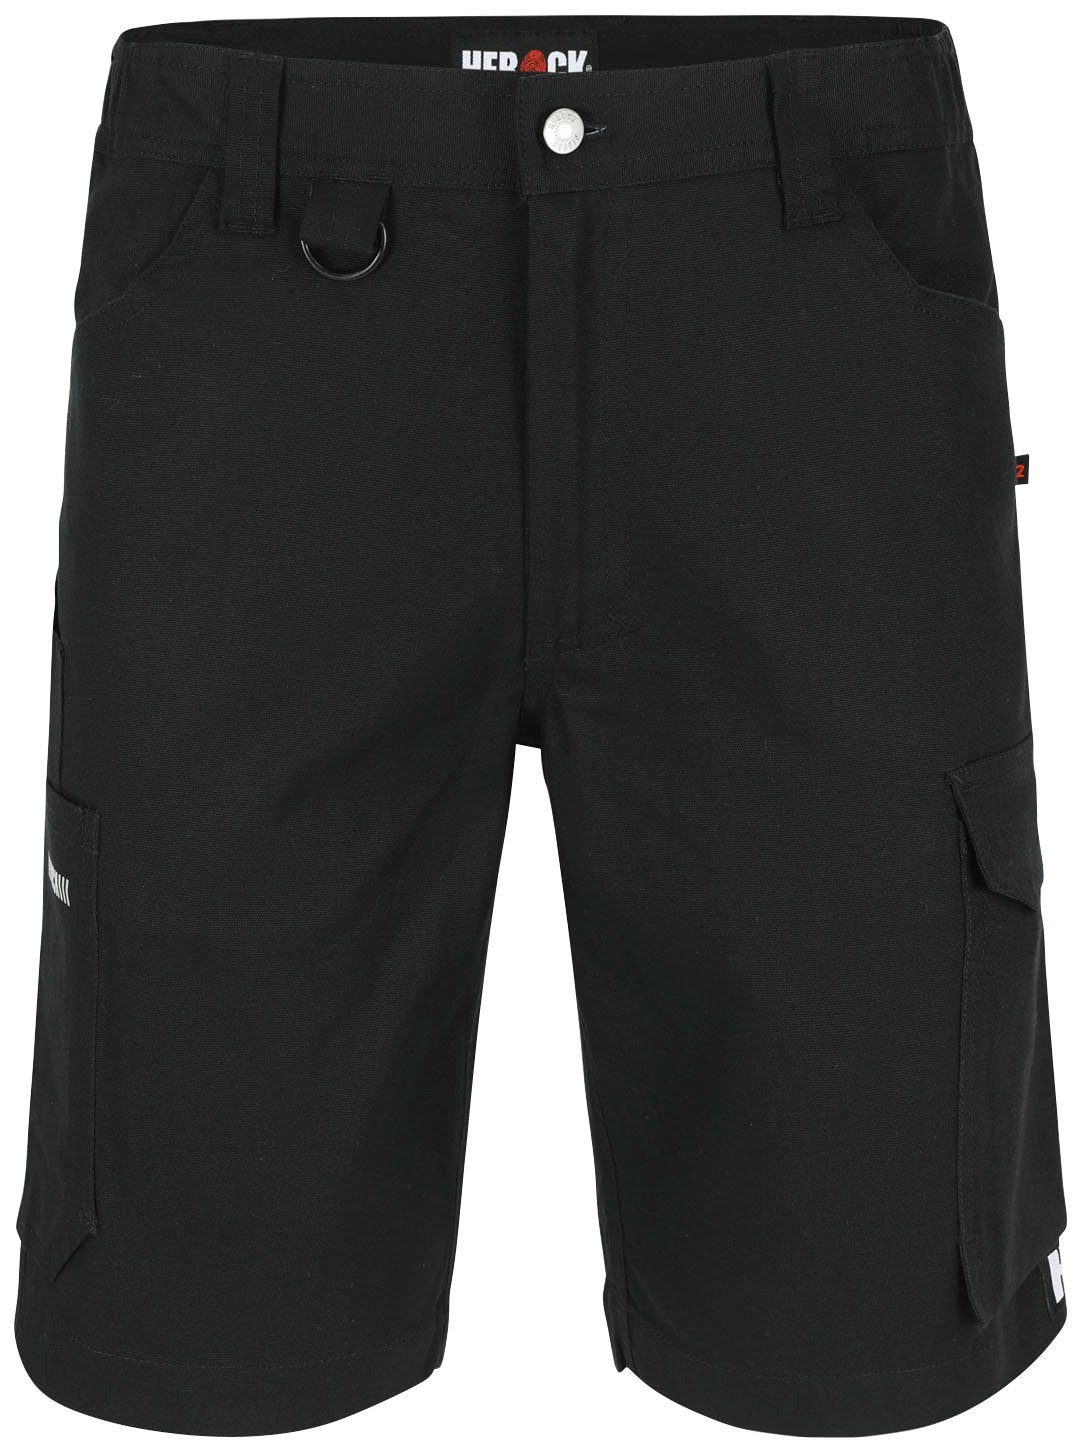 Herock Shorts Bargo Multi-Pocket, mit 2-Wege-Stretch-Einsatz, verschiedene Farben schwarz